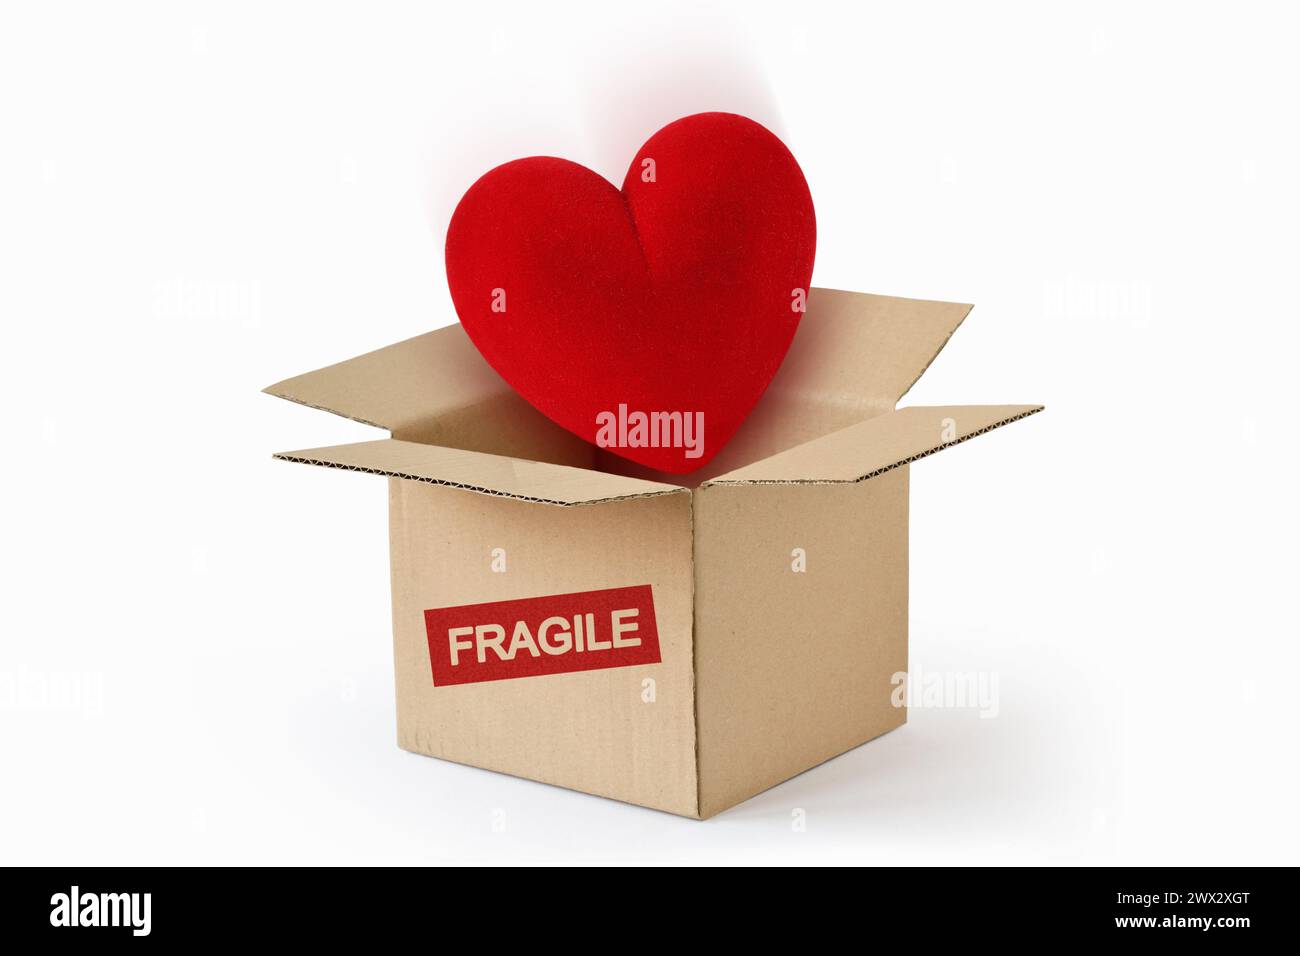 Herz im Karton mit dem Wort Fragile - Konzept von Liebe und Fragilität Stockfoto